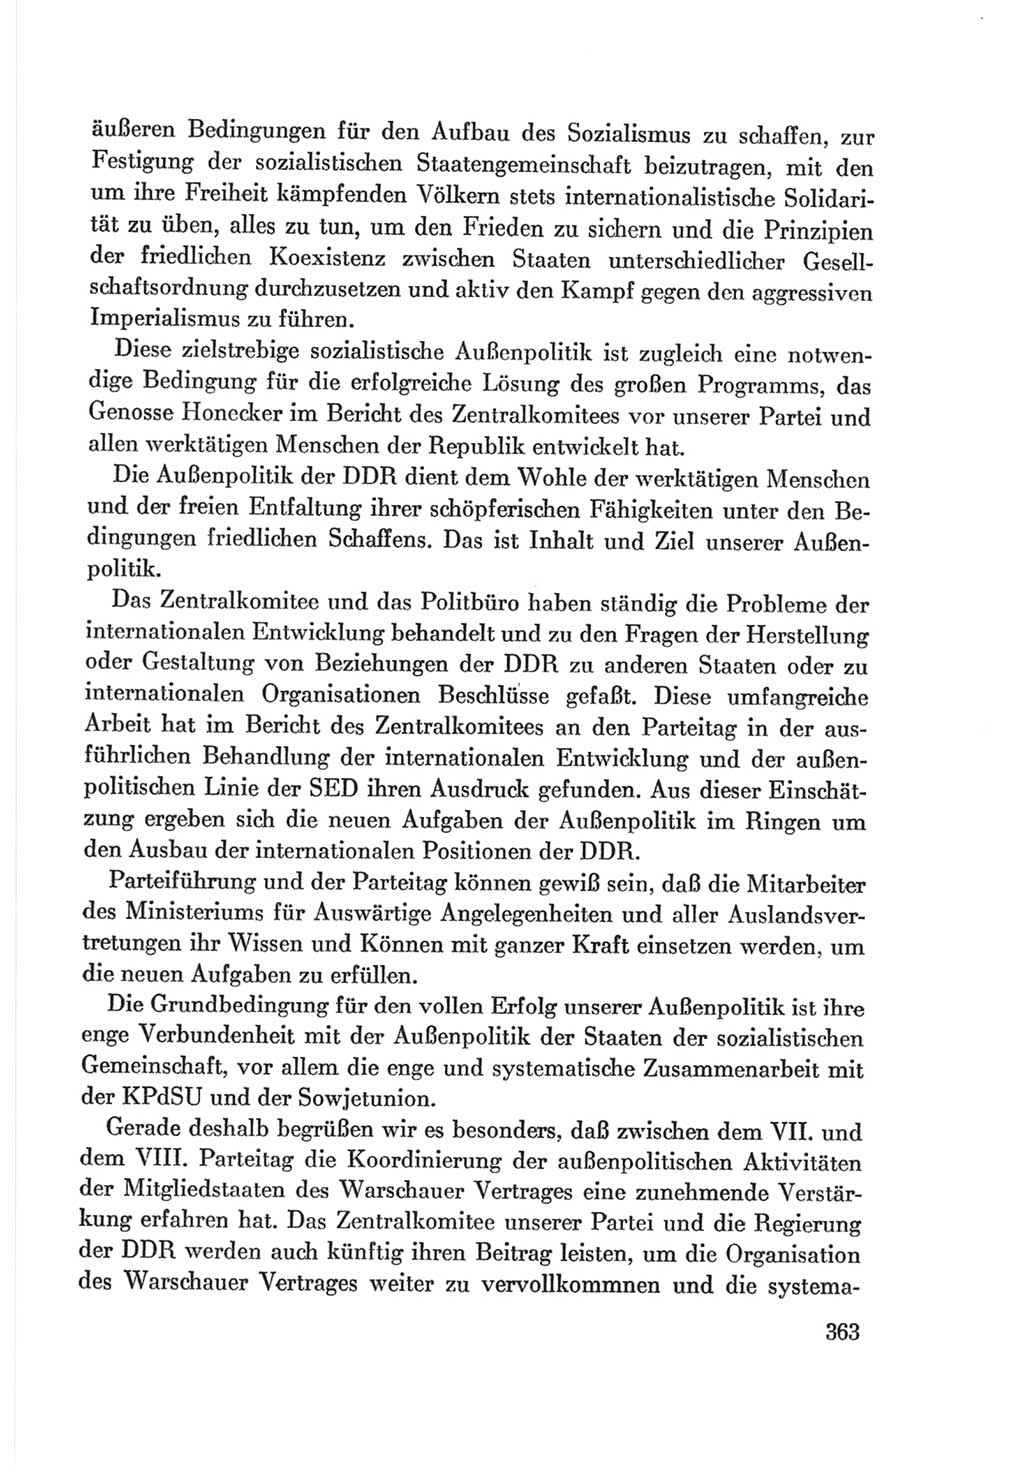 Protokoll der Verhandlungen des Ⅷ. Parteitages der Sozialistischen Einheitspartei Deutschlands (SED) [Deutsche Demokratische Republik (DDR)] 1971, Band 1, Seite 363 (Prot. Verh. Ⅷ. PT SED DDR 1971, Bd. 1, S. 363)